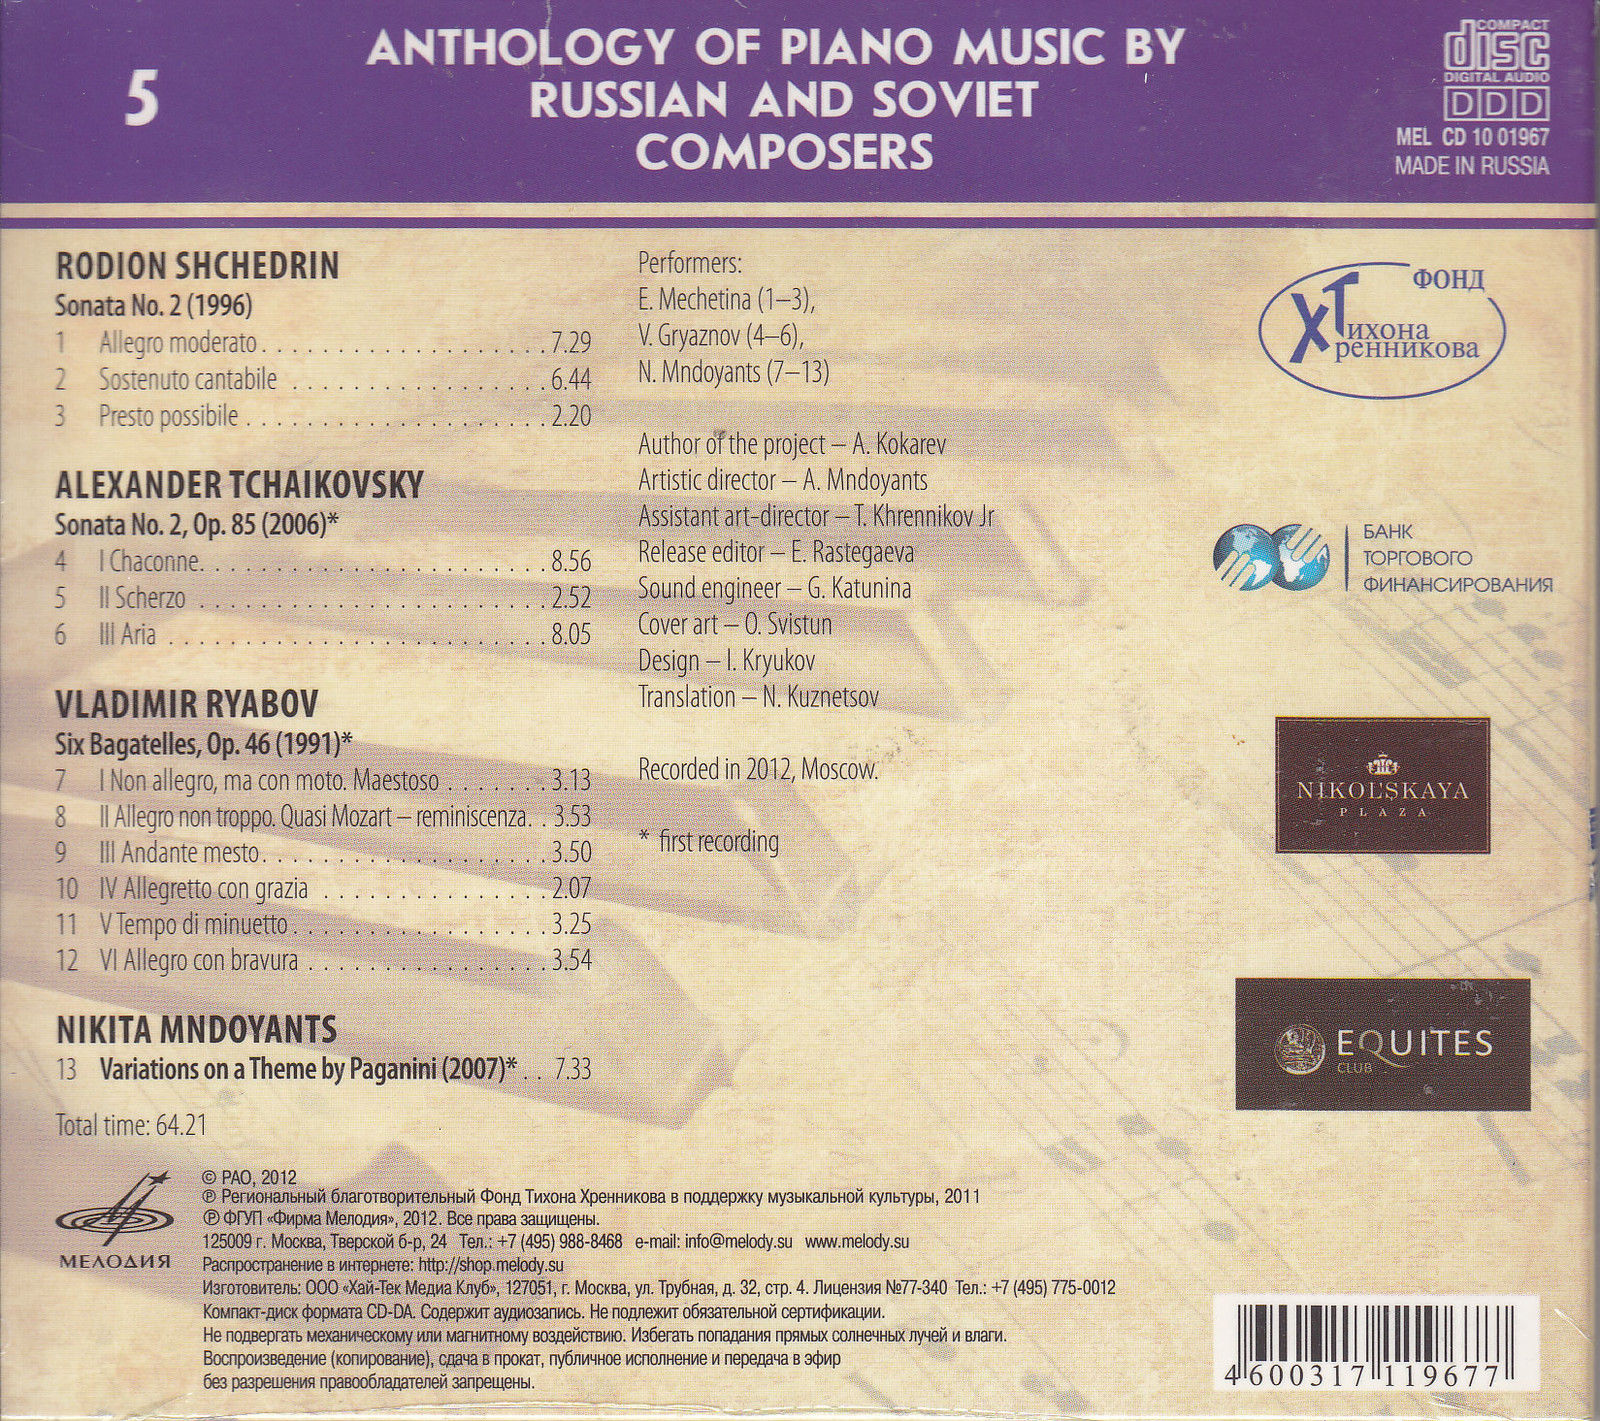 Антология фортепианной музыки русских и советских композиторов. Часть 2 (1991— н.в.) диск 1 (5)